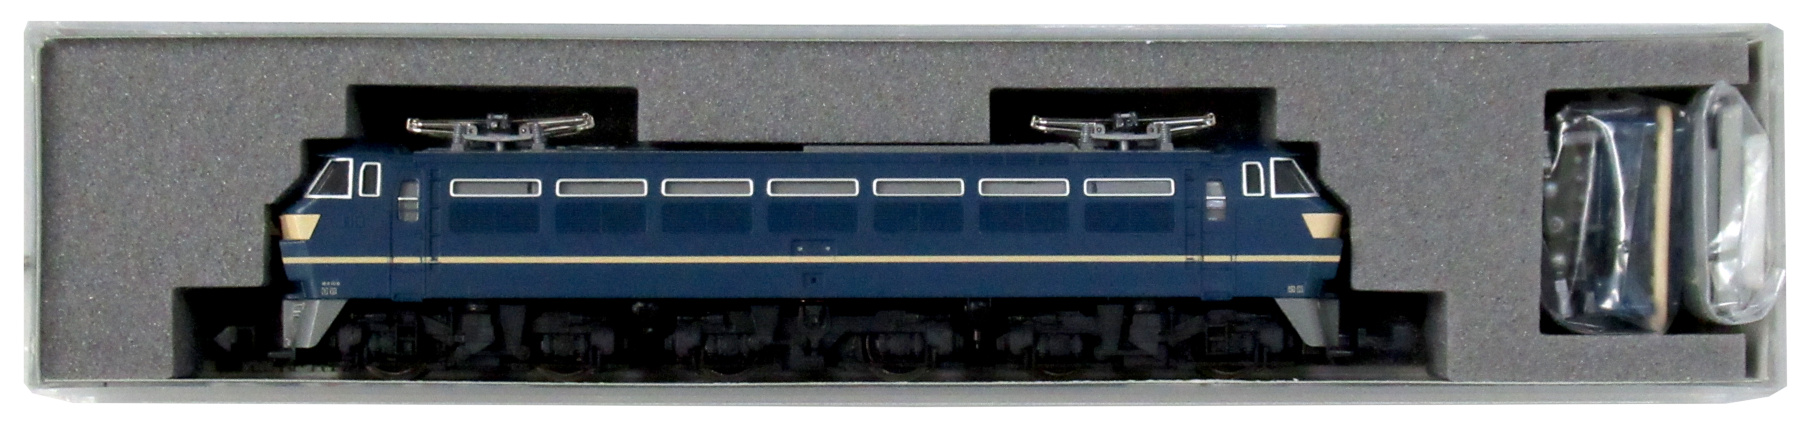 Nゲージ KATO(カトー) 3047 EF66 後期形 2004年ロット 